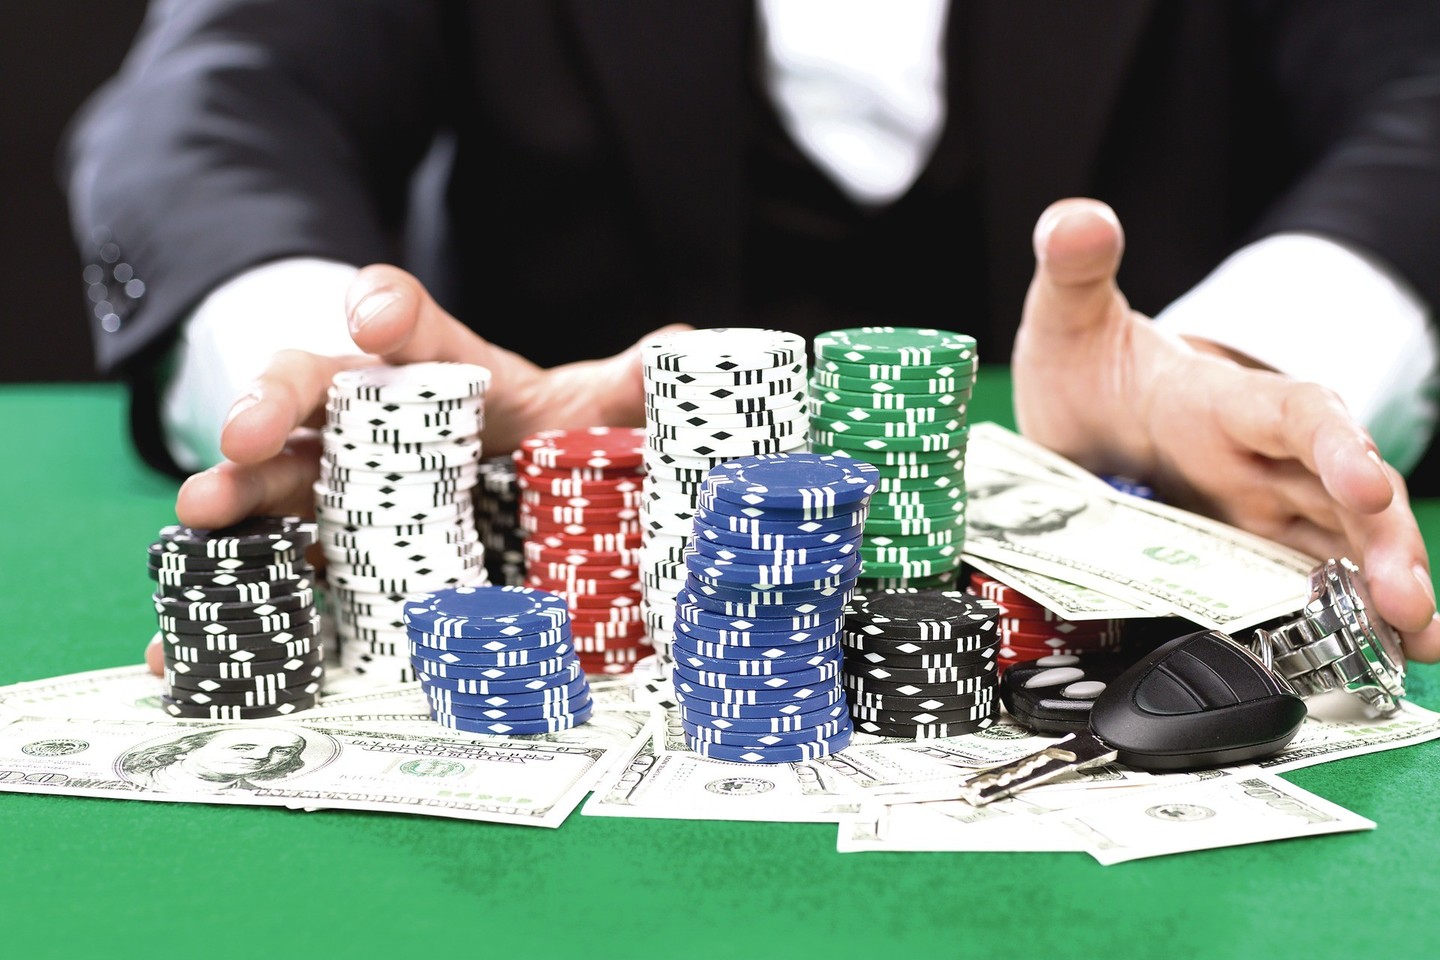 Azartinių žaidimų lošėjai turi daug puikių savybių, kurios sužavi kitus. Jie taip pat turi įžūlumo ir drąsos, kitaip trypčiotų prie kazino durų.<br>„123rf.com“ nuotr.